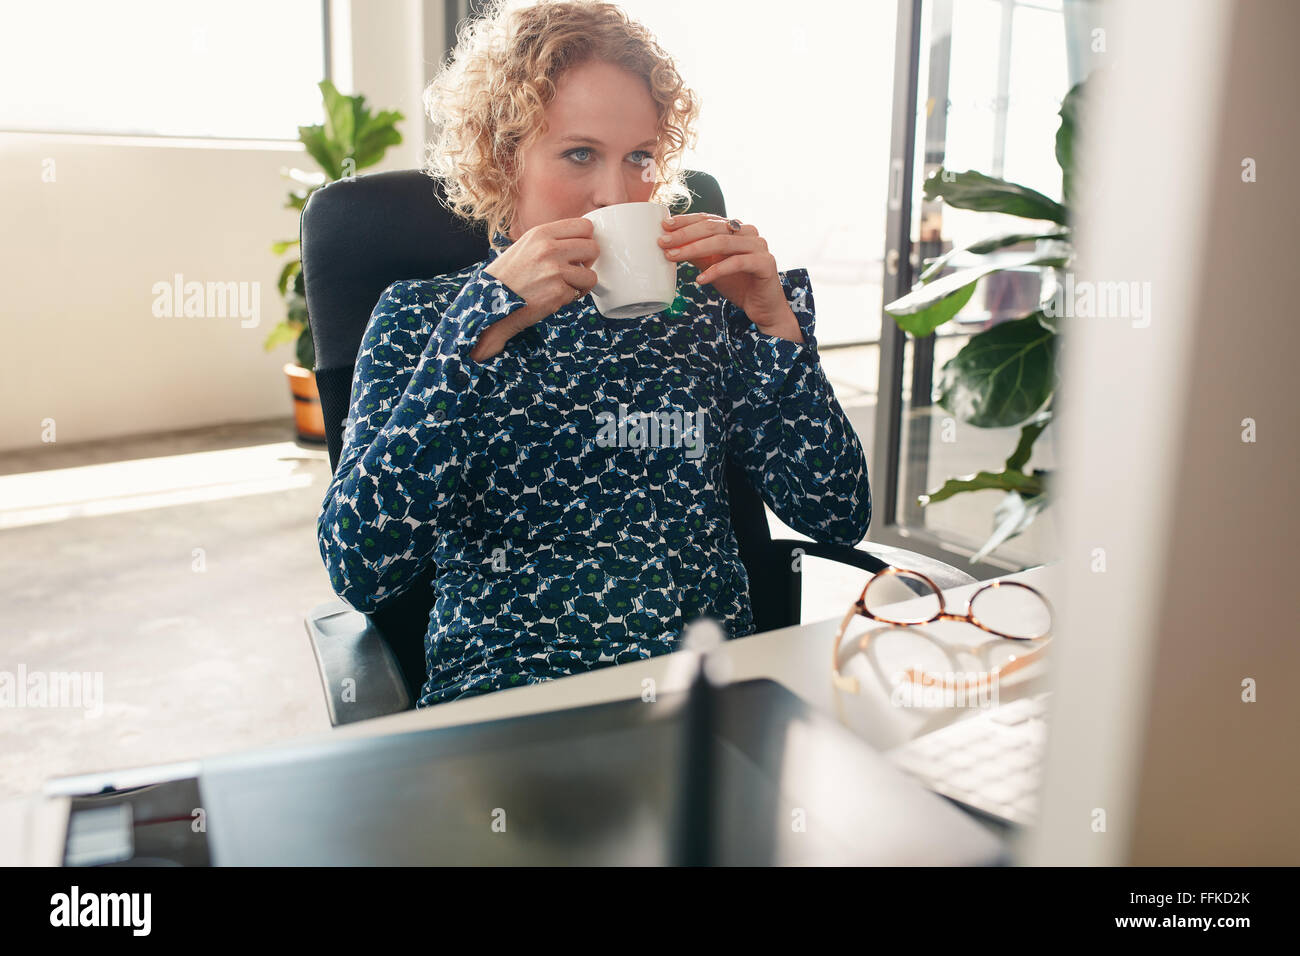 Retrato de mujer joven sentado en su pupitre bebiendo café y mirando el monitor del equipo. Diseñador reflexiva con café. Foto de stock